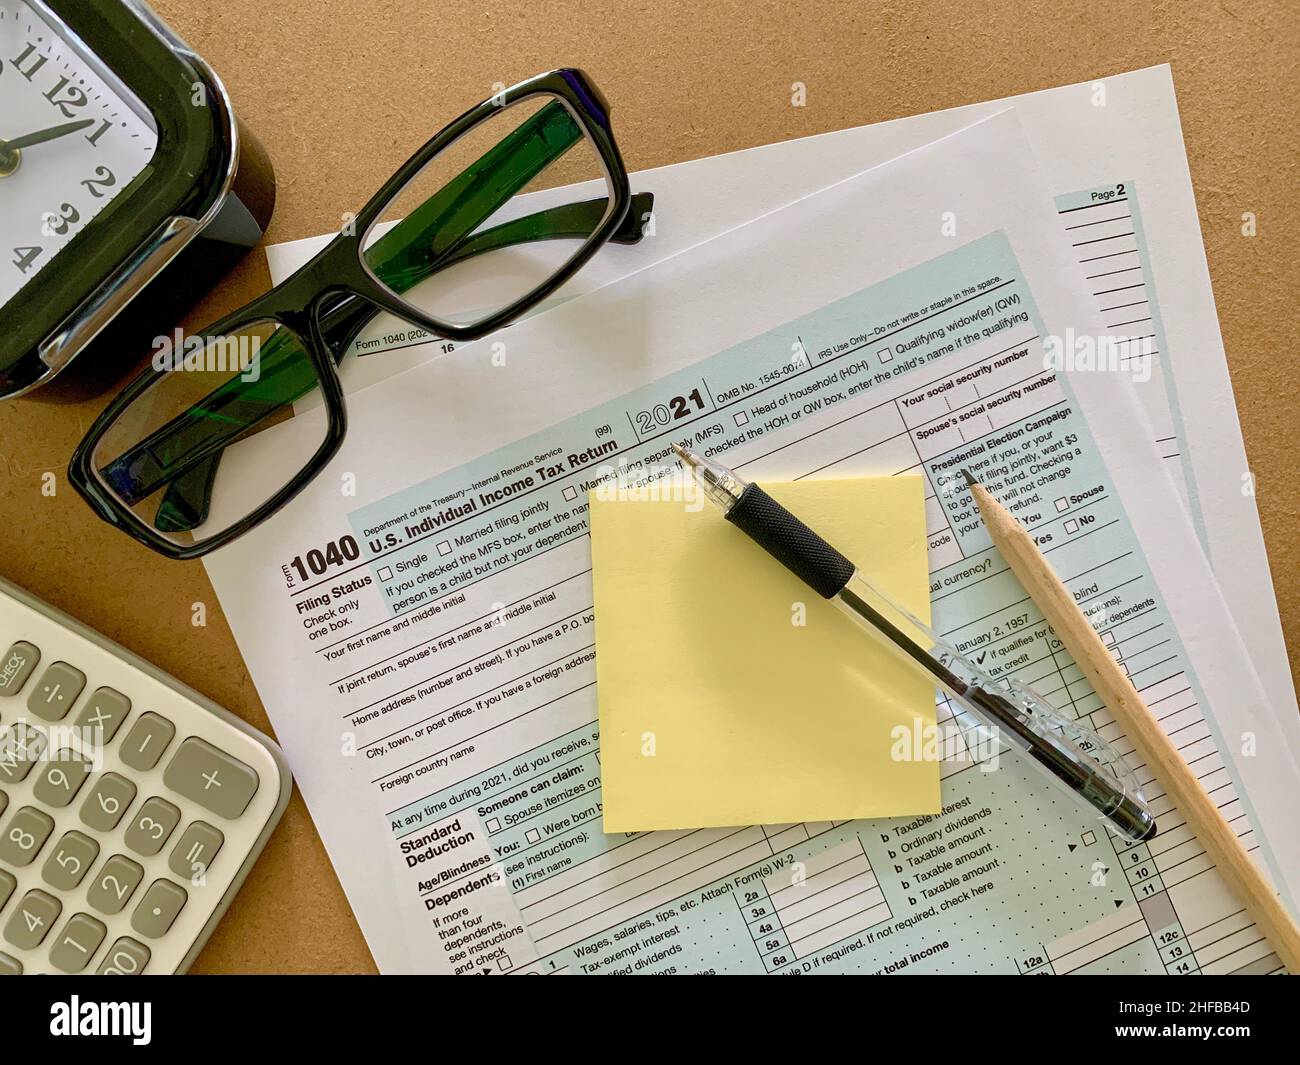 1040 US forma fiscale individuale con adesivi, penna, matita, calcolatrice, occhiali e orologio nero. Foto Stock